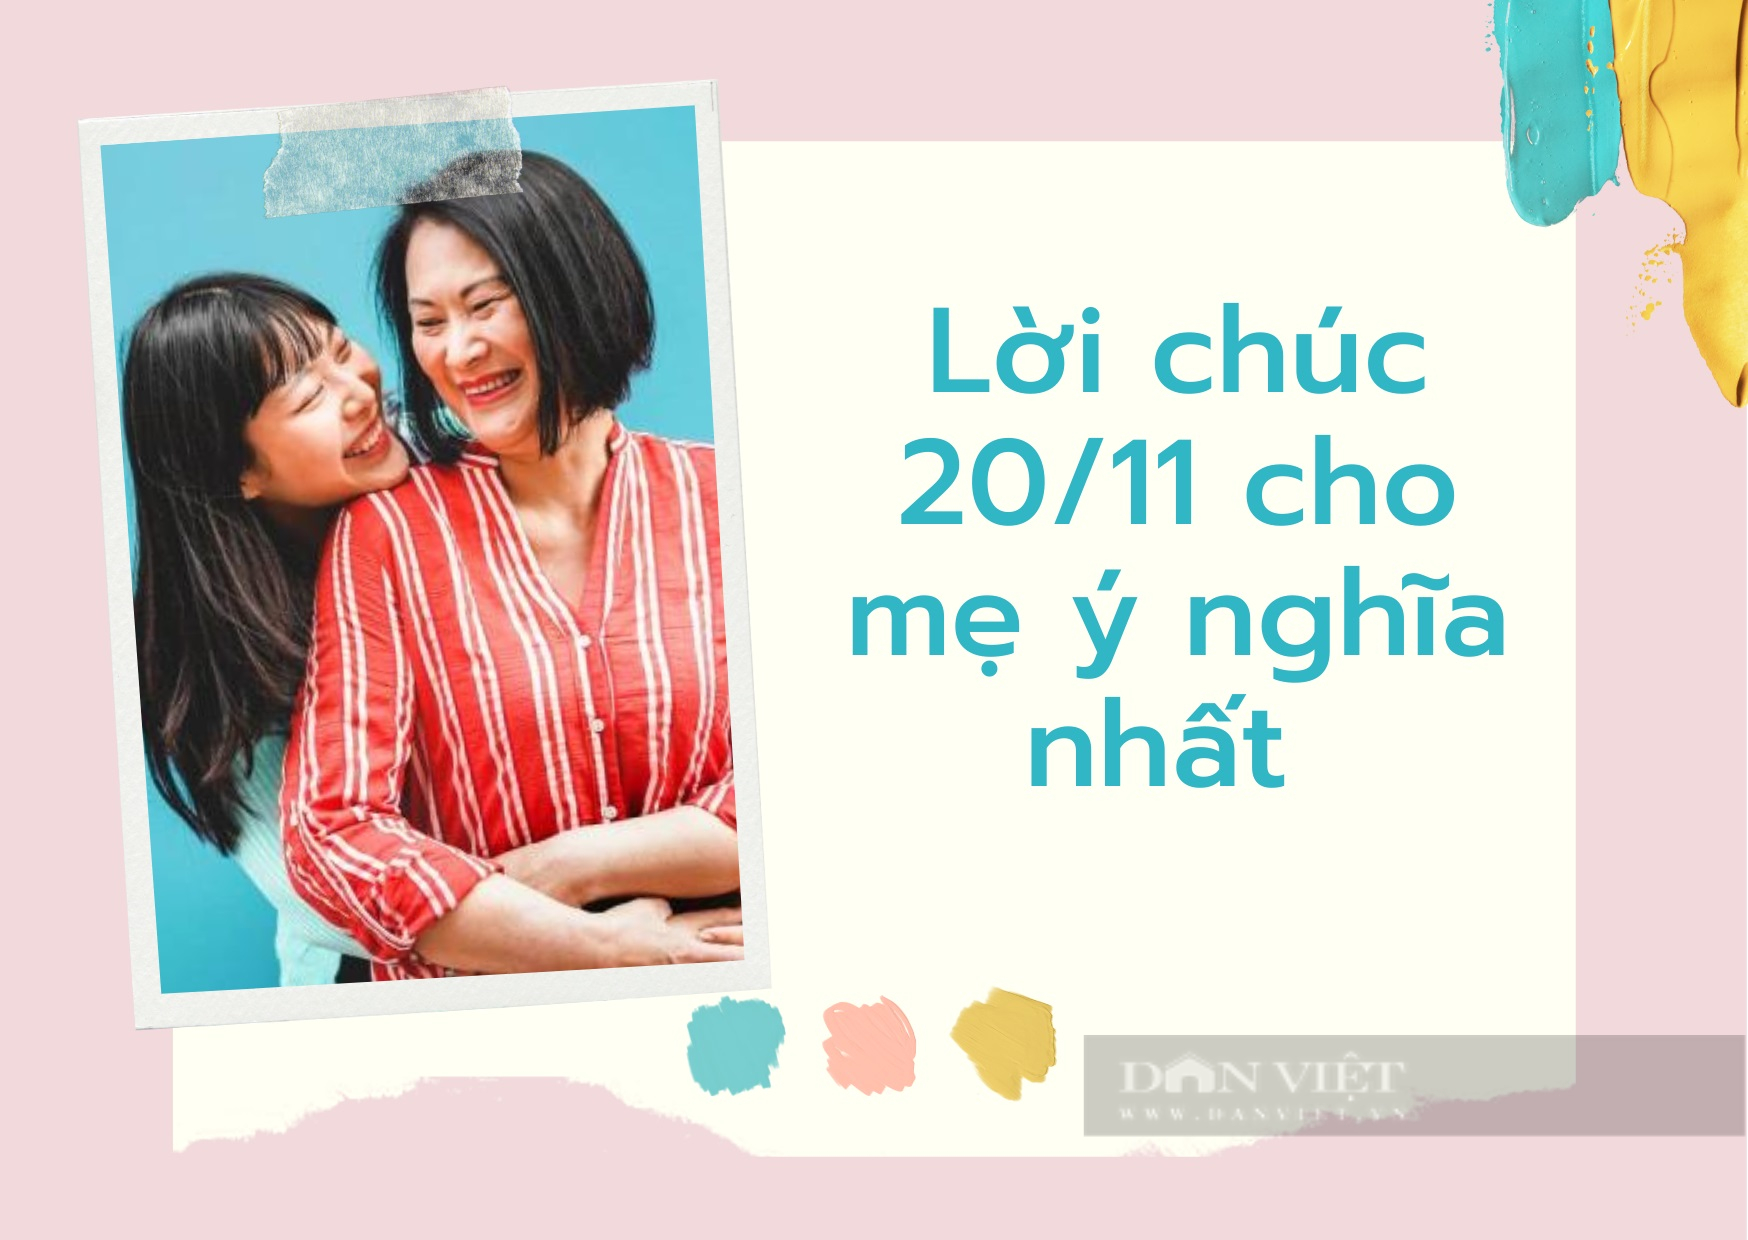 Một lời chúc đầy cảm xúc dành tặng cho các bà, các mẹ giáo viên trong ngày Nhà giáo Việt Nam 20-